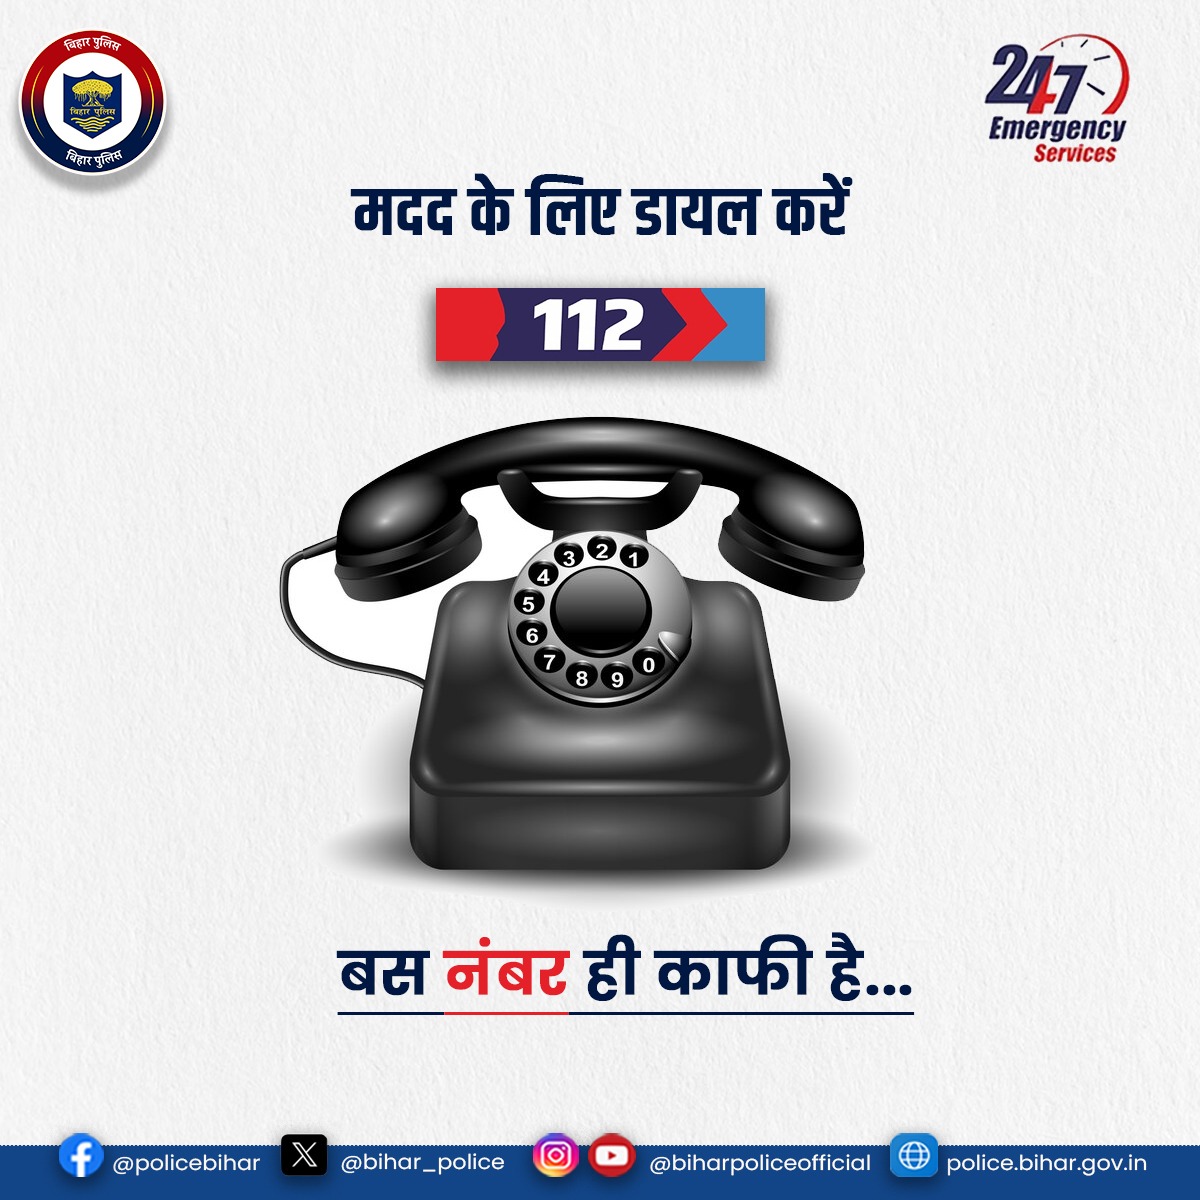 हो कोई भी अपराध या हो कोई #Emergency 

जब कोई ना आए काम, तब सामने आता है बस एक नाम. . . 
'डॉयल 112' है कई समस्याओं का बस एक समाधान।
.
.
#BiharPolice #Dial112 #HainTaiyaarHum